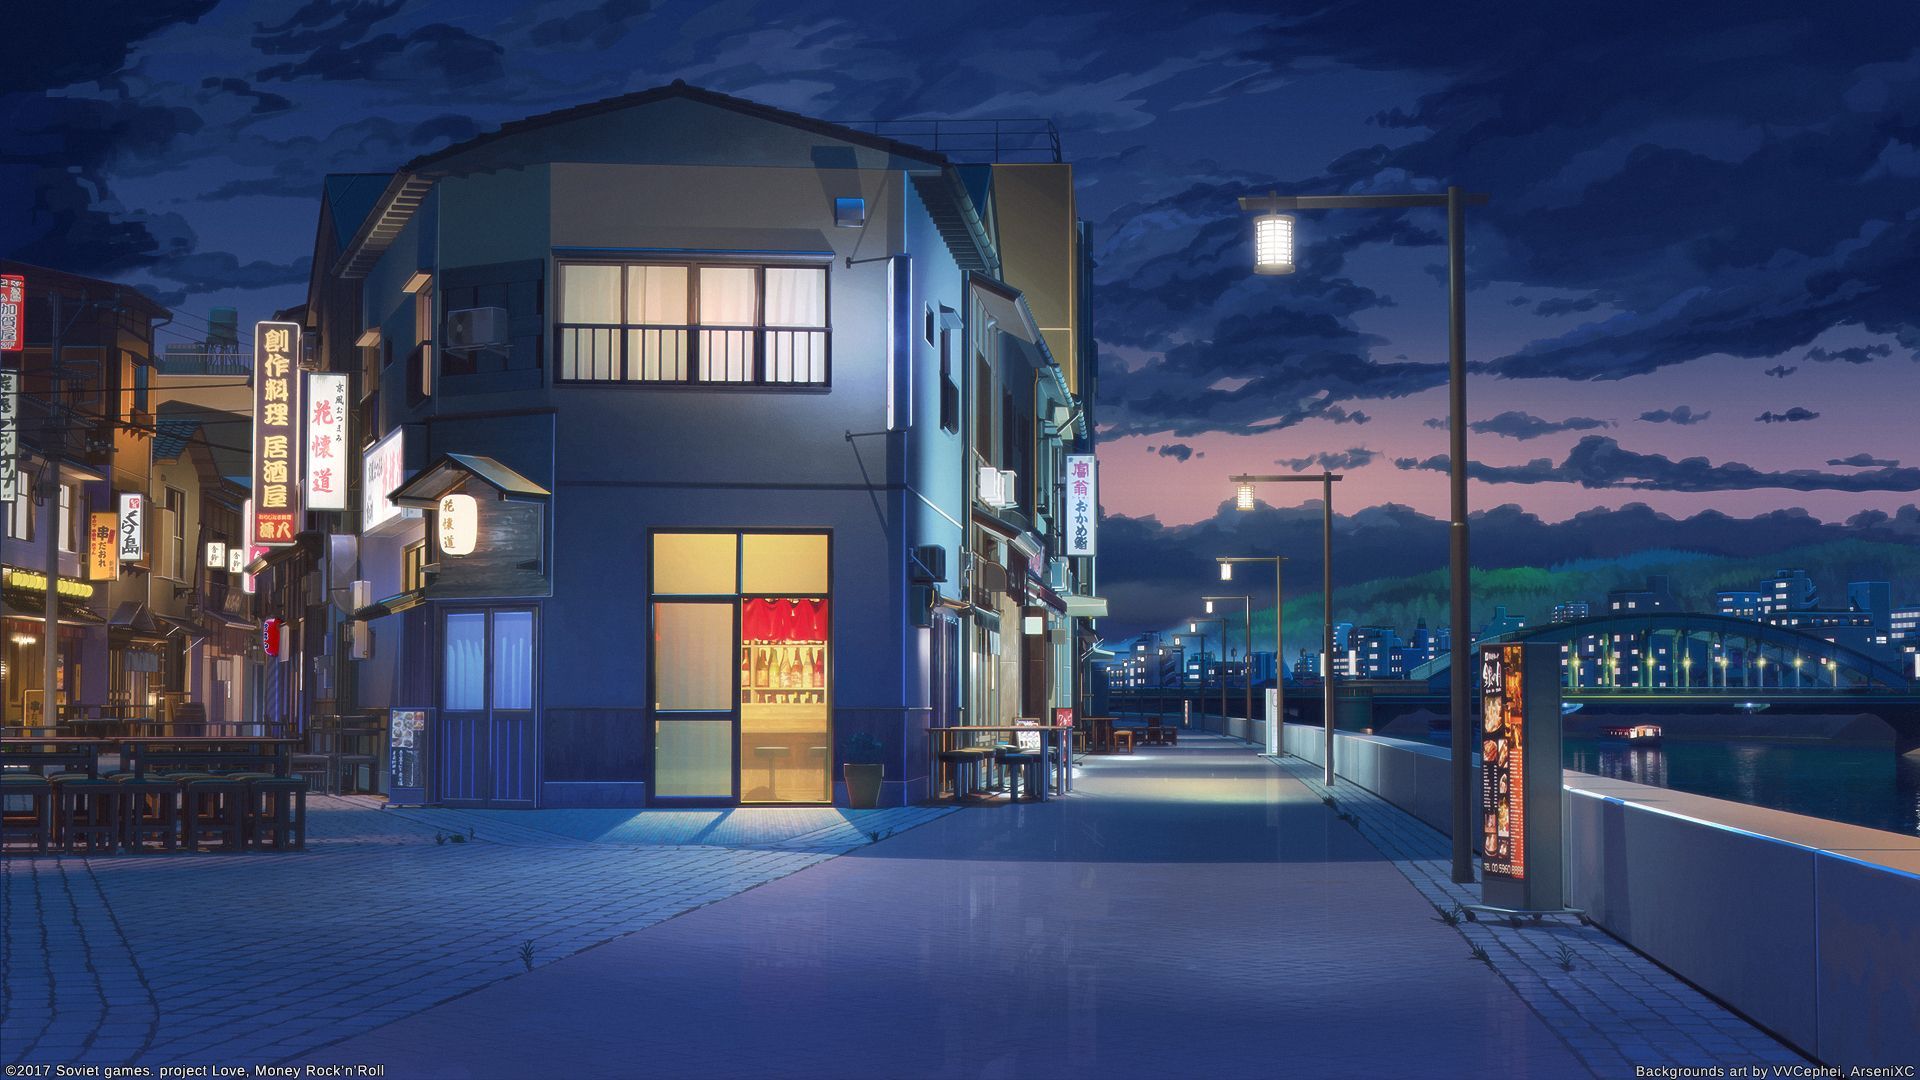 Bức hình Anime night street wallpapers với nền tảng đen đậm và ánh sáng neon sẽ mang lại cho bạn cảm giác náo nhiệt và thú vị. Những thước phim đẹp mắt này cung cấp cho bạn một cái nhìn đầu tiên về những bức tranh đường phố đêm anime và mang đến cho bạn một trải nghiệm tuyệt vời.